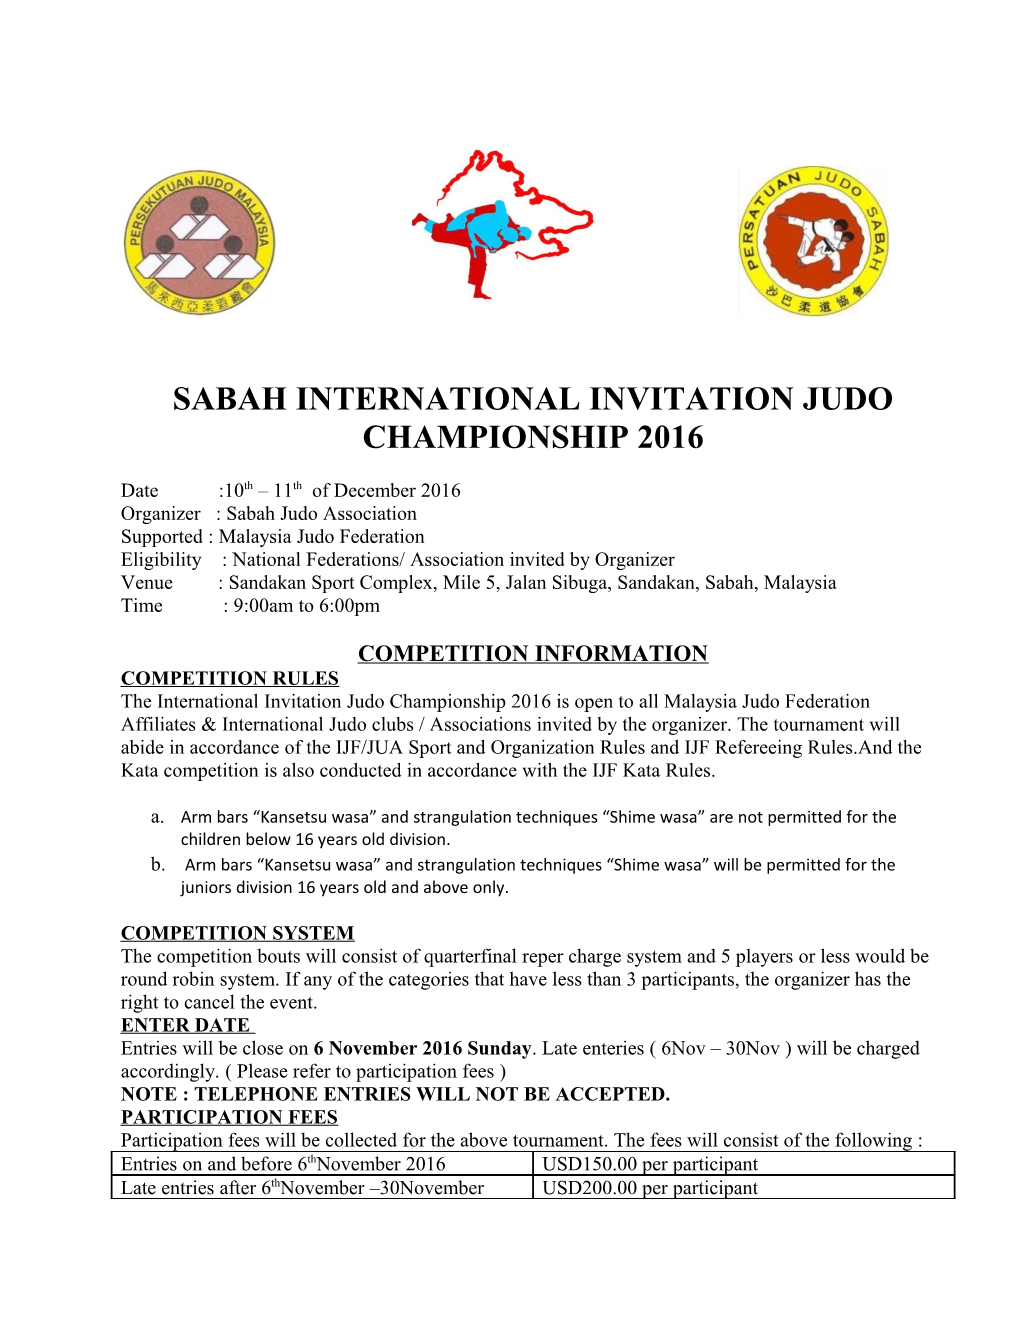 Sabah International Invitation Judo Championship 2016